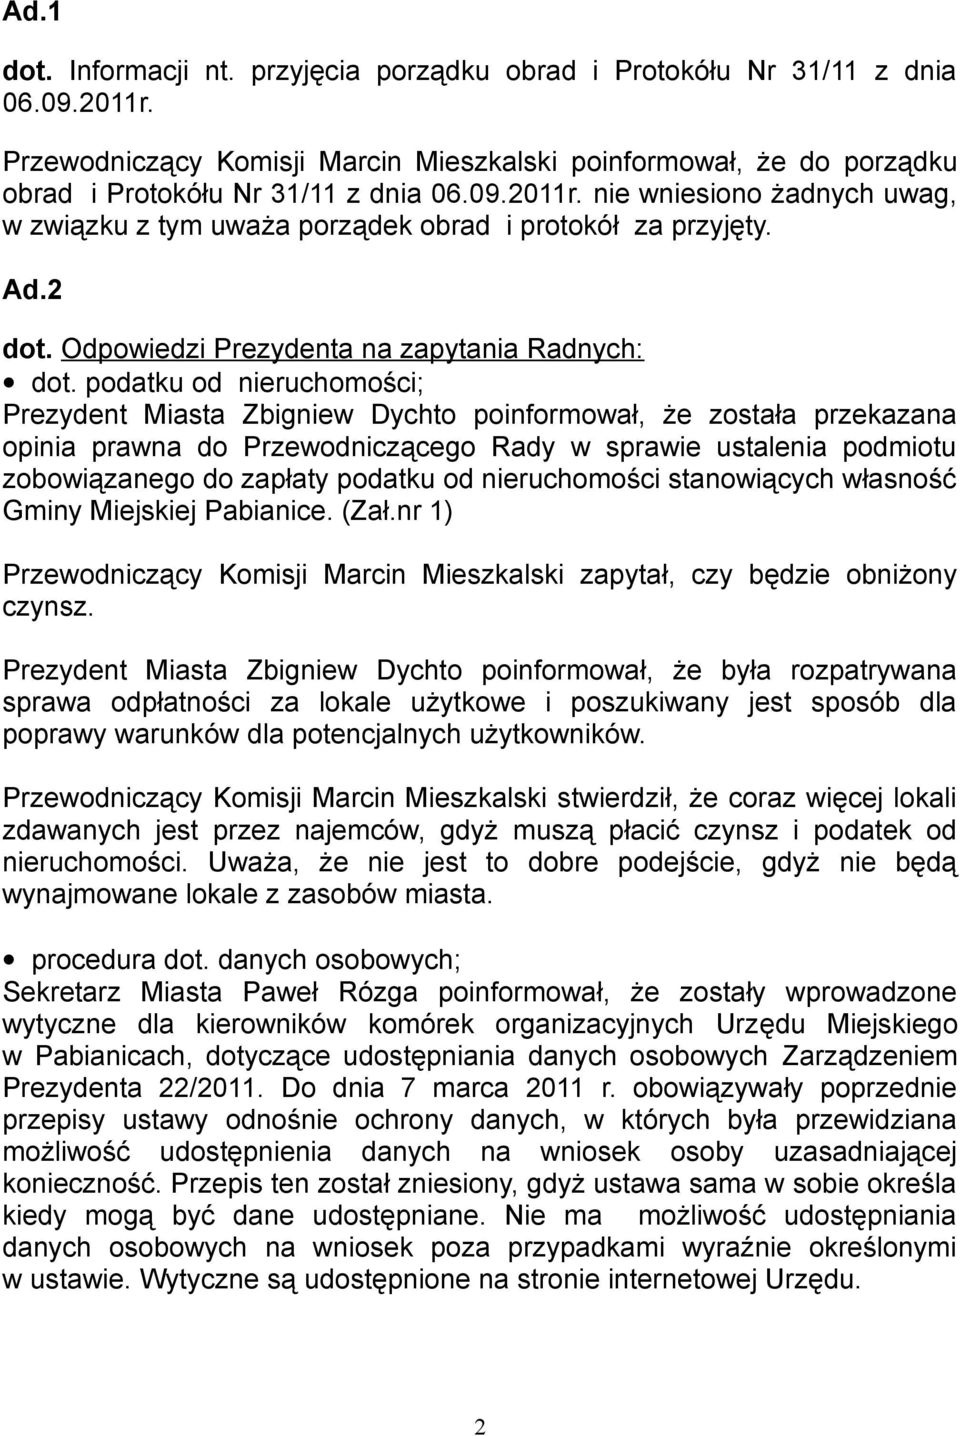 podatku od nieruchomości; Prezydent Miasta Zbigniew Dychto poinformował, że została przekazana opinia prawna do Przewodniczącego Rady w sprawie ustalenia podmiotu zobowiązanego do zapłaty podatku od